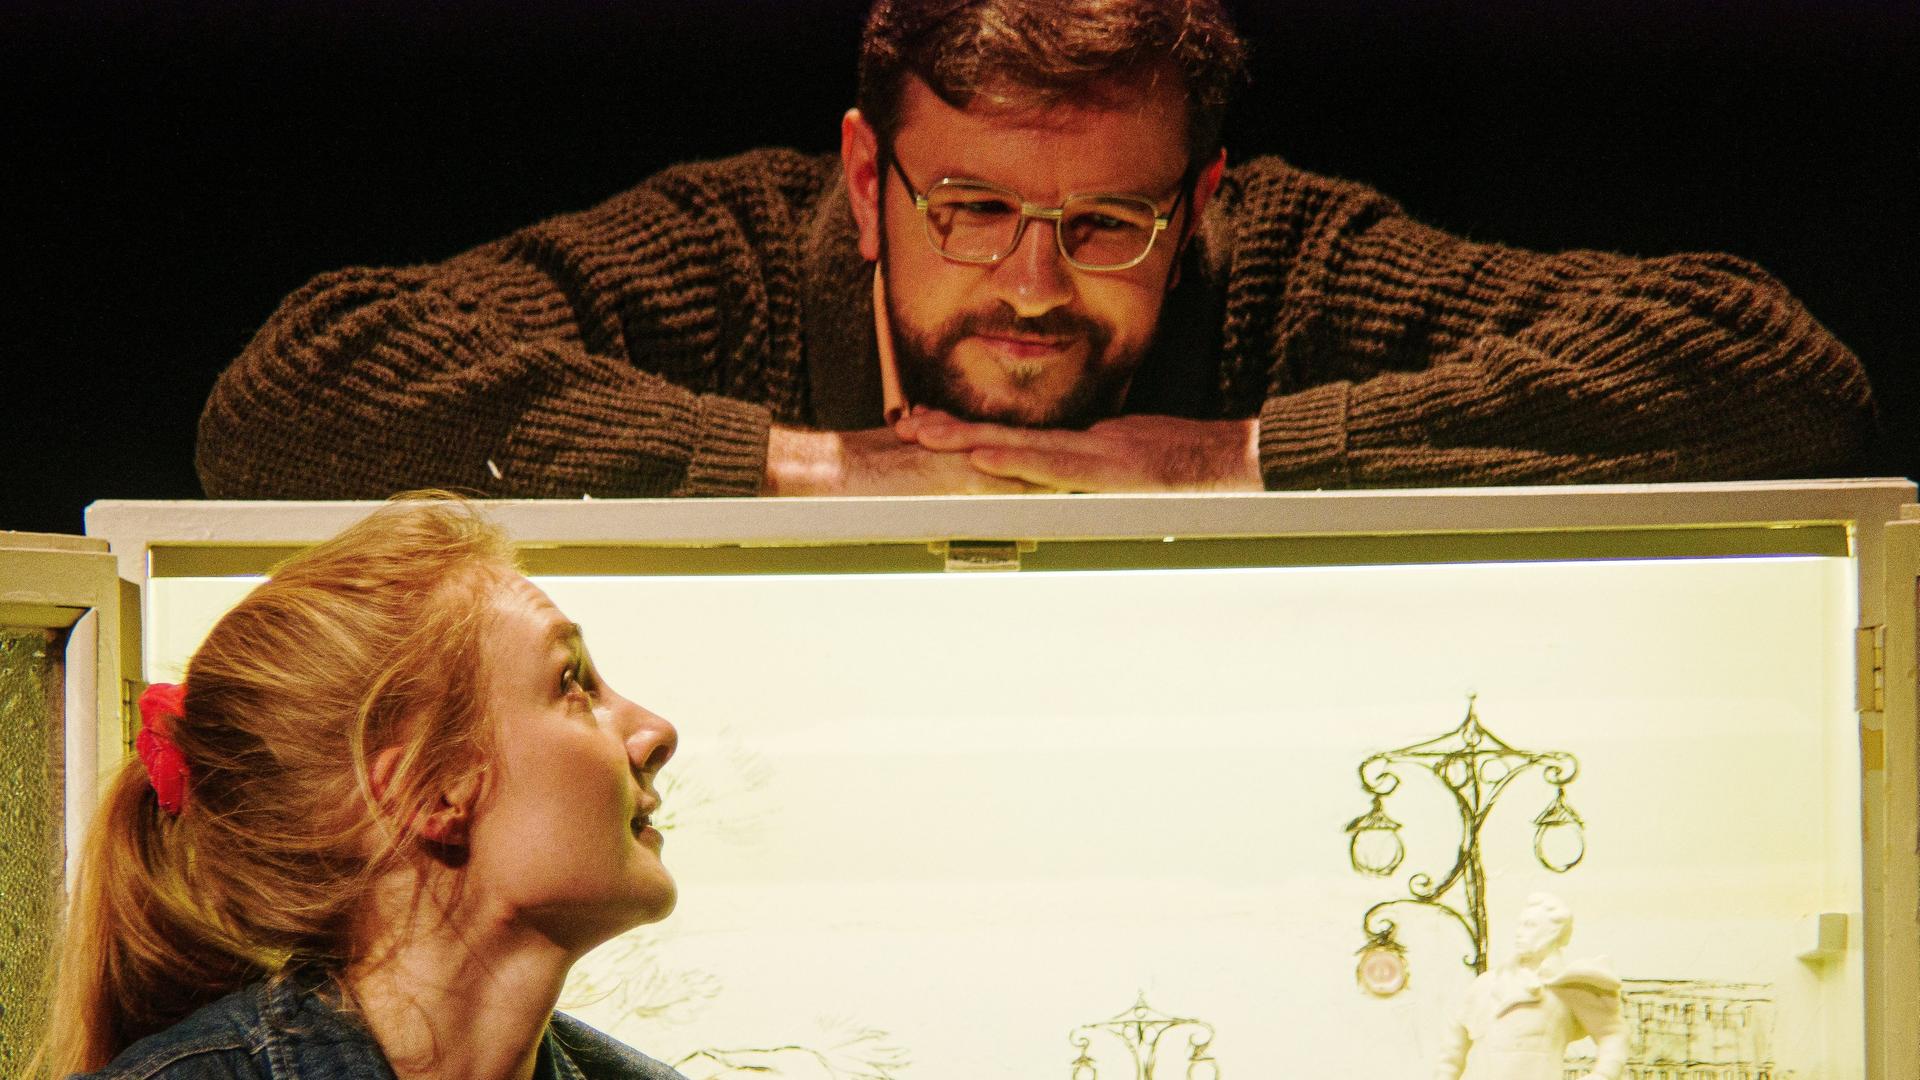 Probeaufnahme des Stücks "Zalot": Eine junge, blonde Frau mit Jeansweste sitzt vor einem Bild. Sie blickt nach oben, wo sich am oberen Rand des Bildes ein Mann befindet. Er trägt eine Brille und einen braunen Pullover, er lächelt.